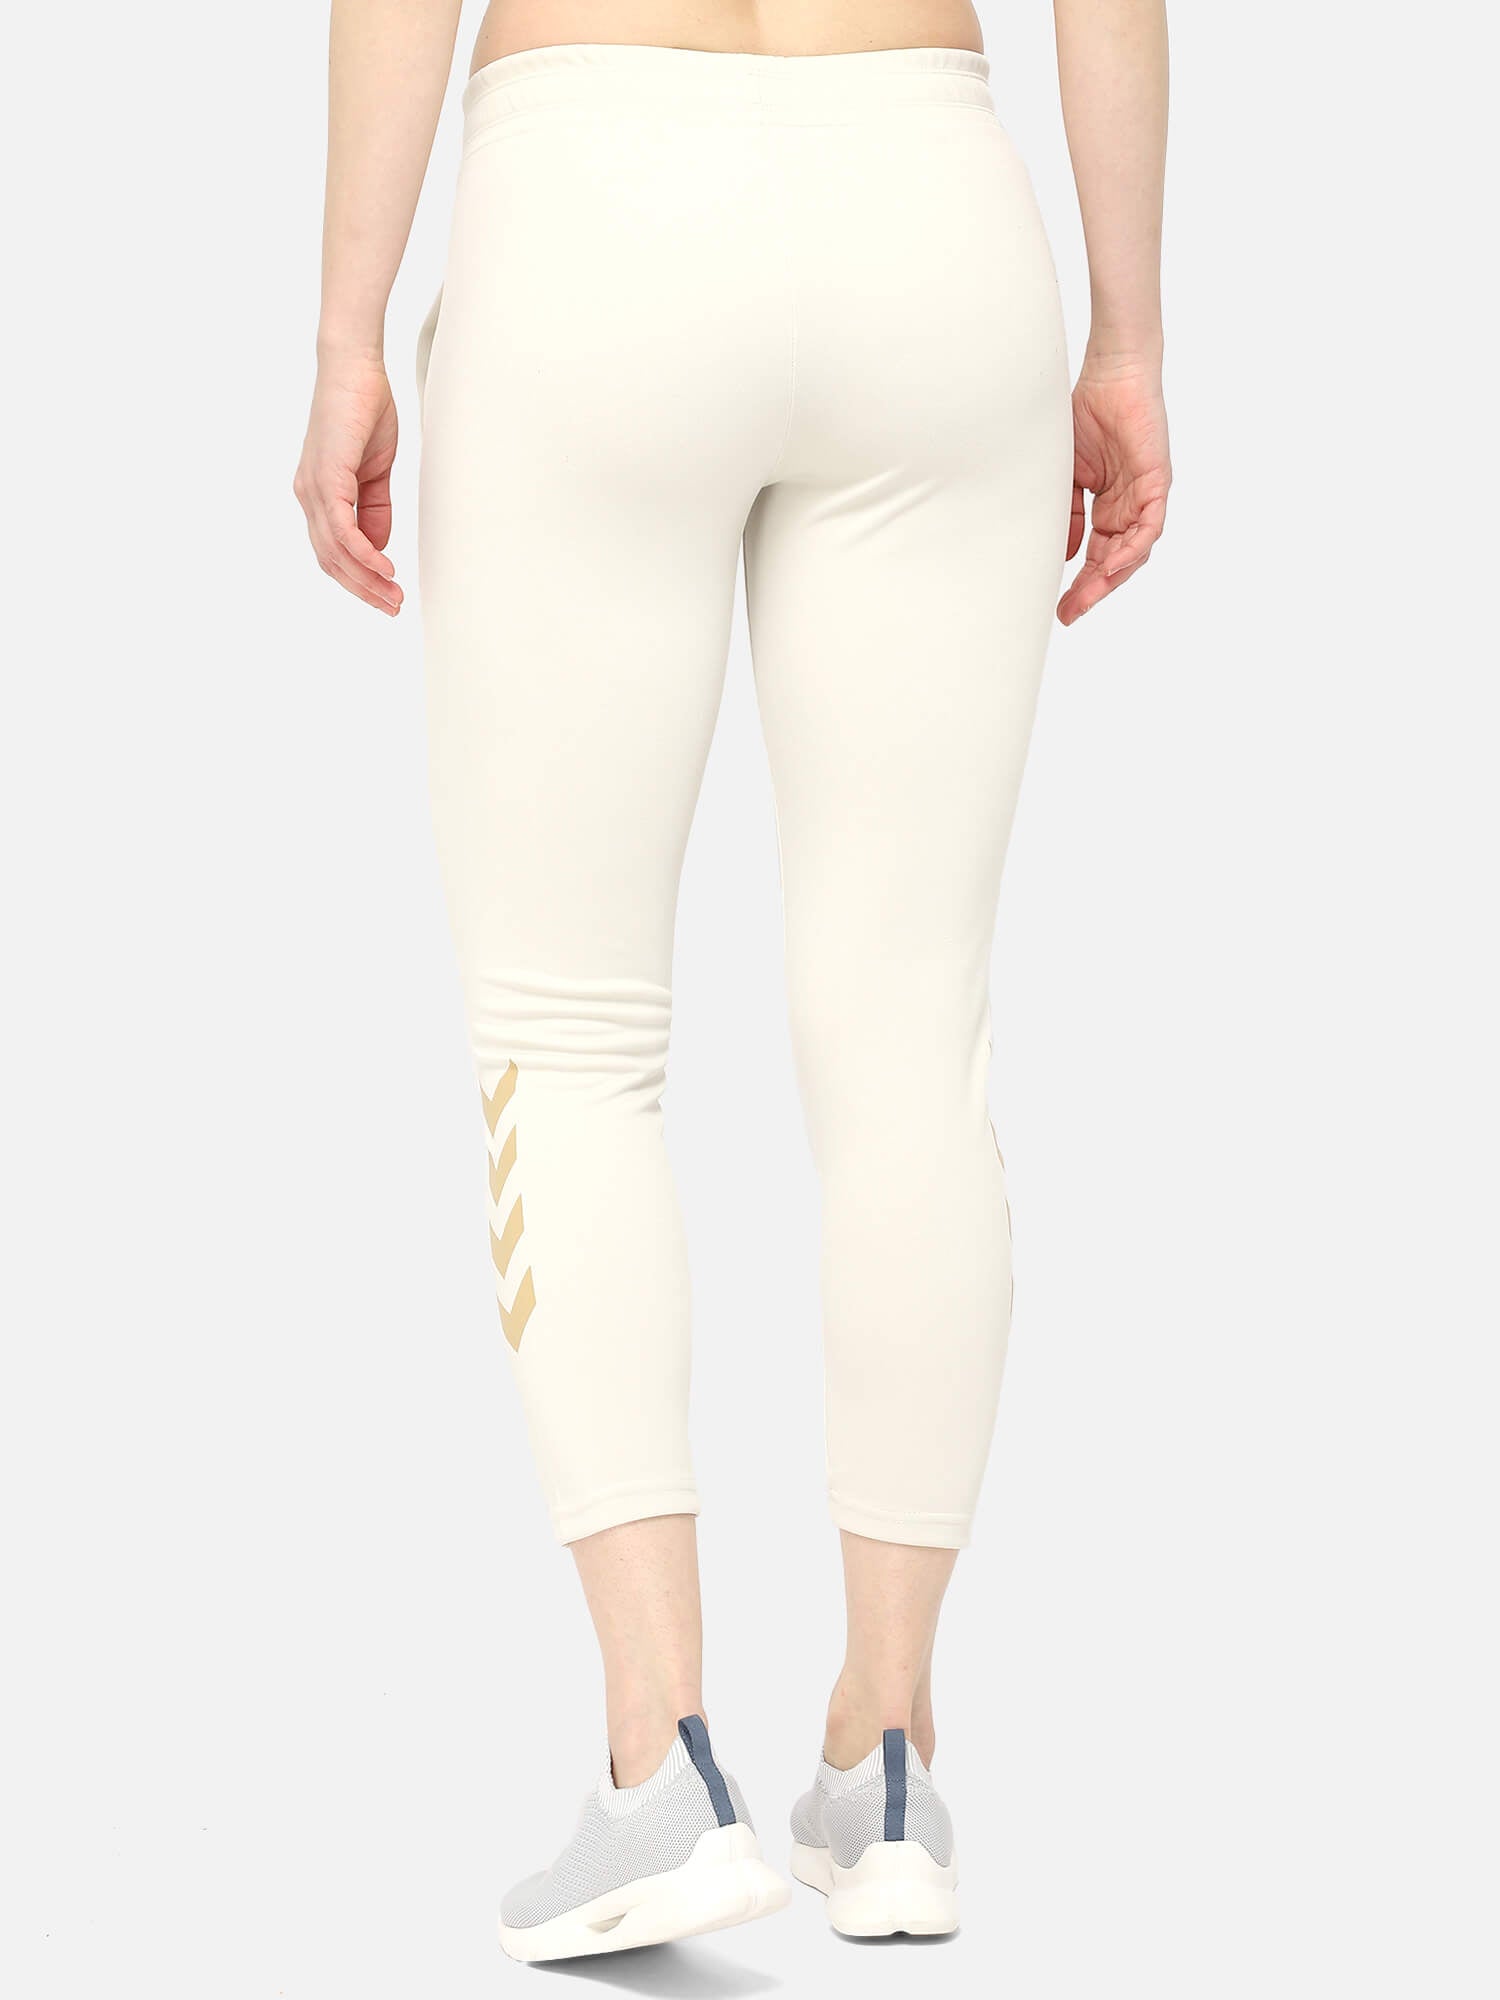 Ziba Tapered White Pants for Women